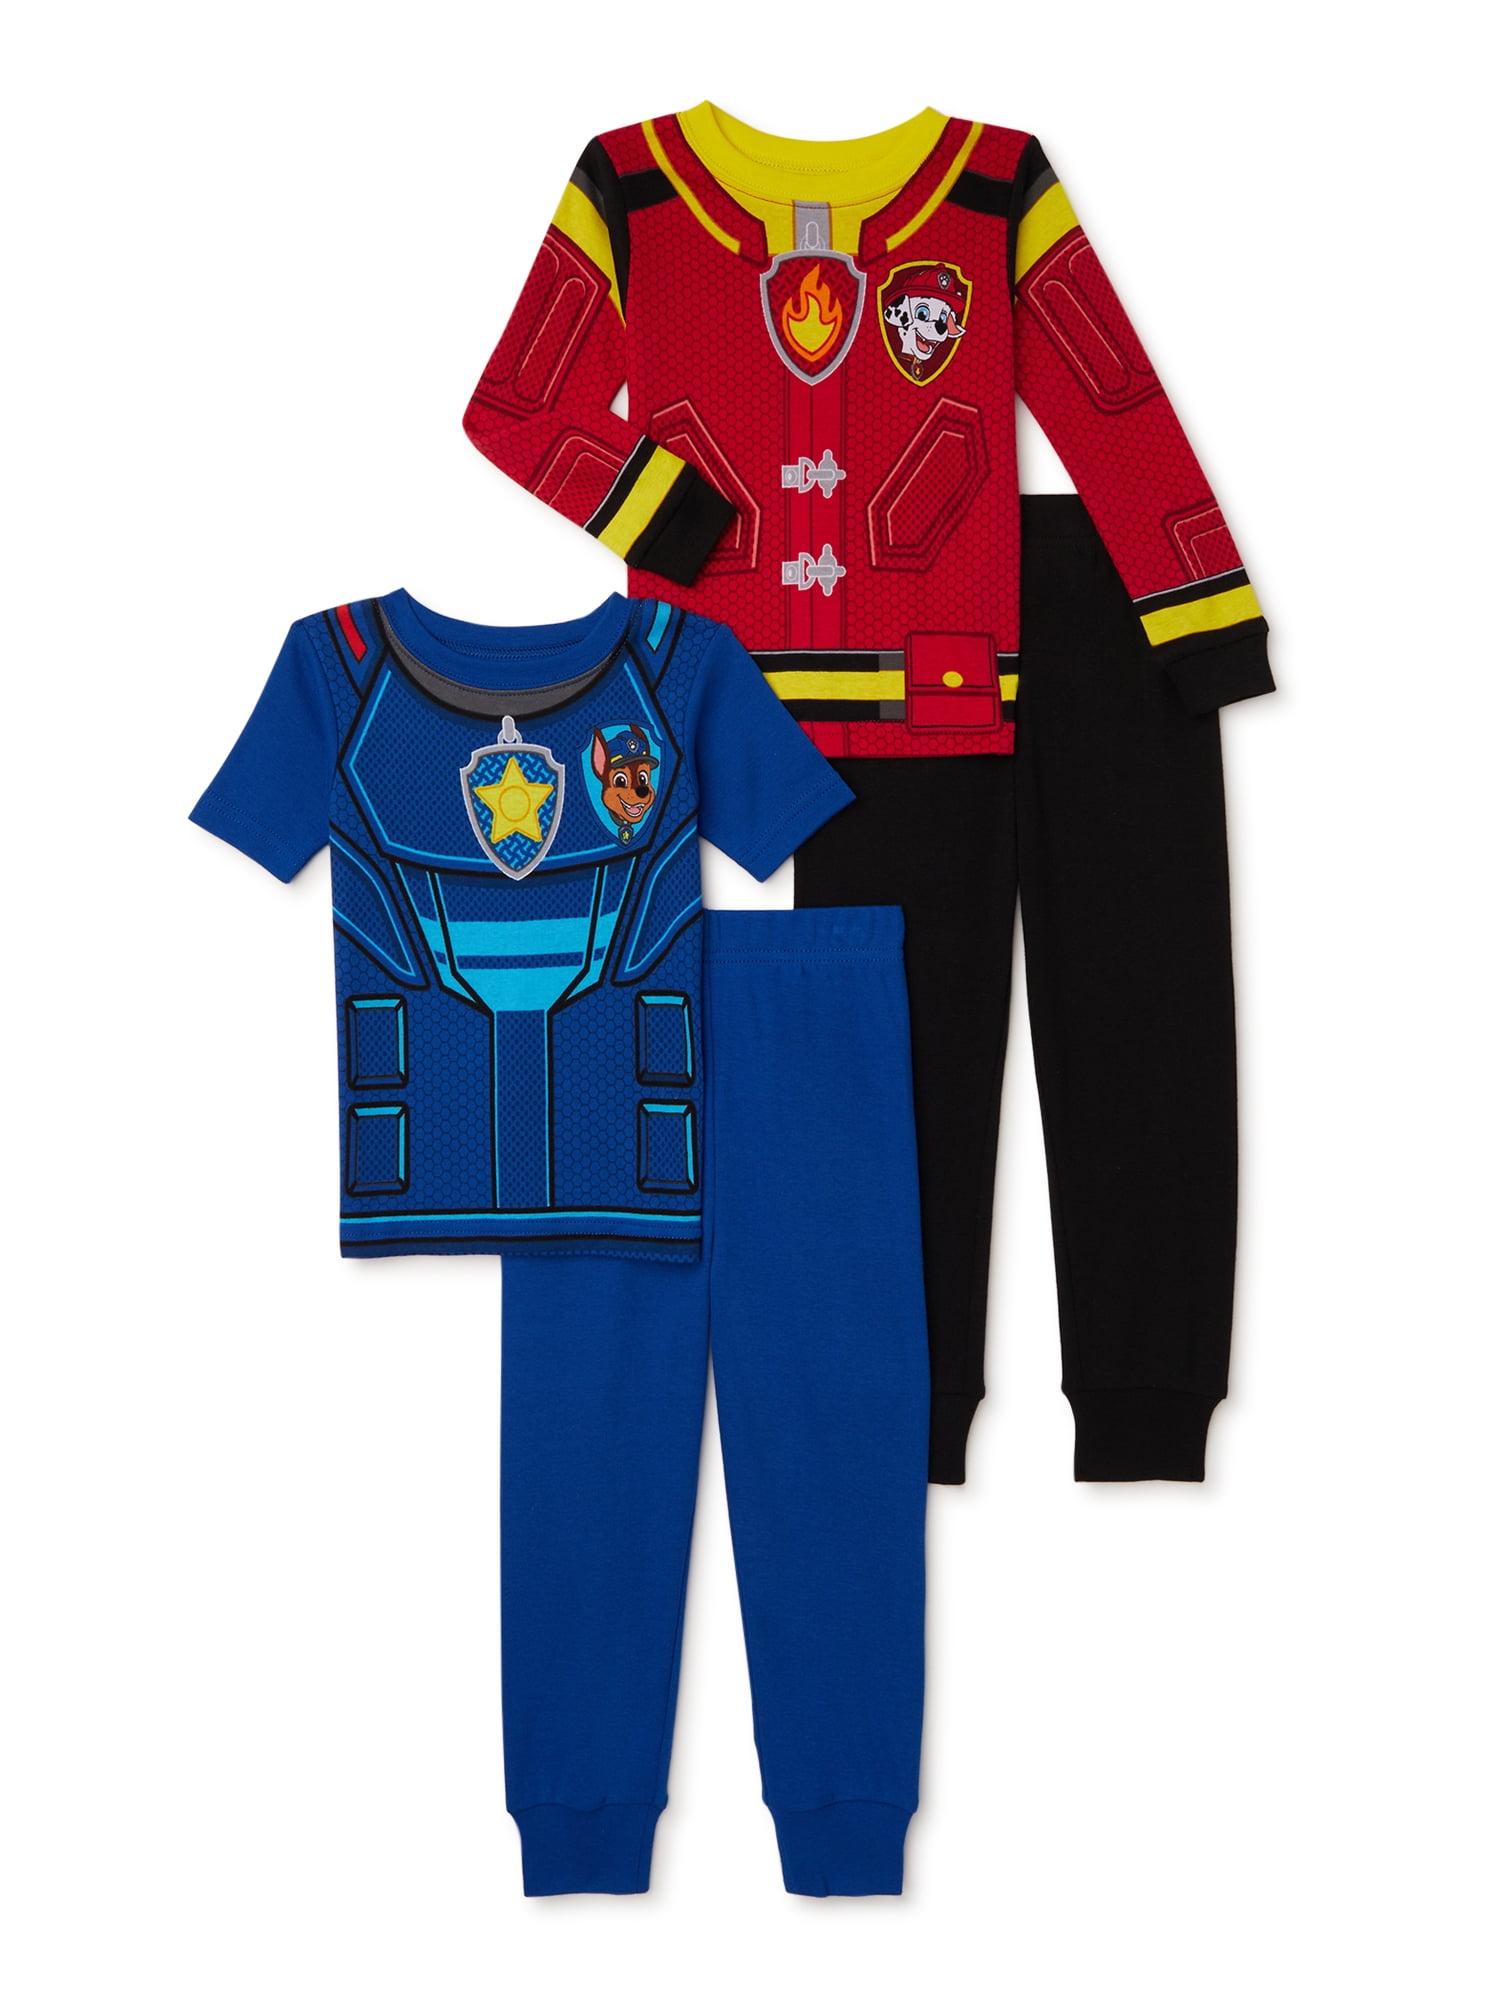 5T Toddler Girls Paw Patrol Pajamas Shirt Pant PJ Set Skye Marshall Chase Gift 